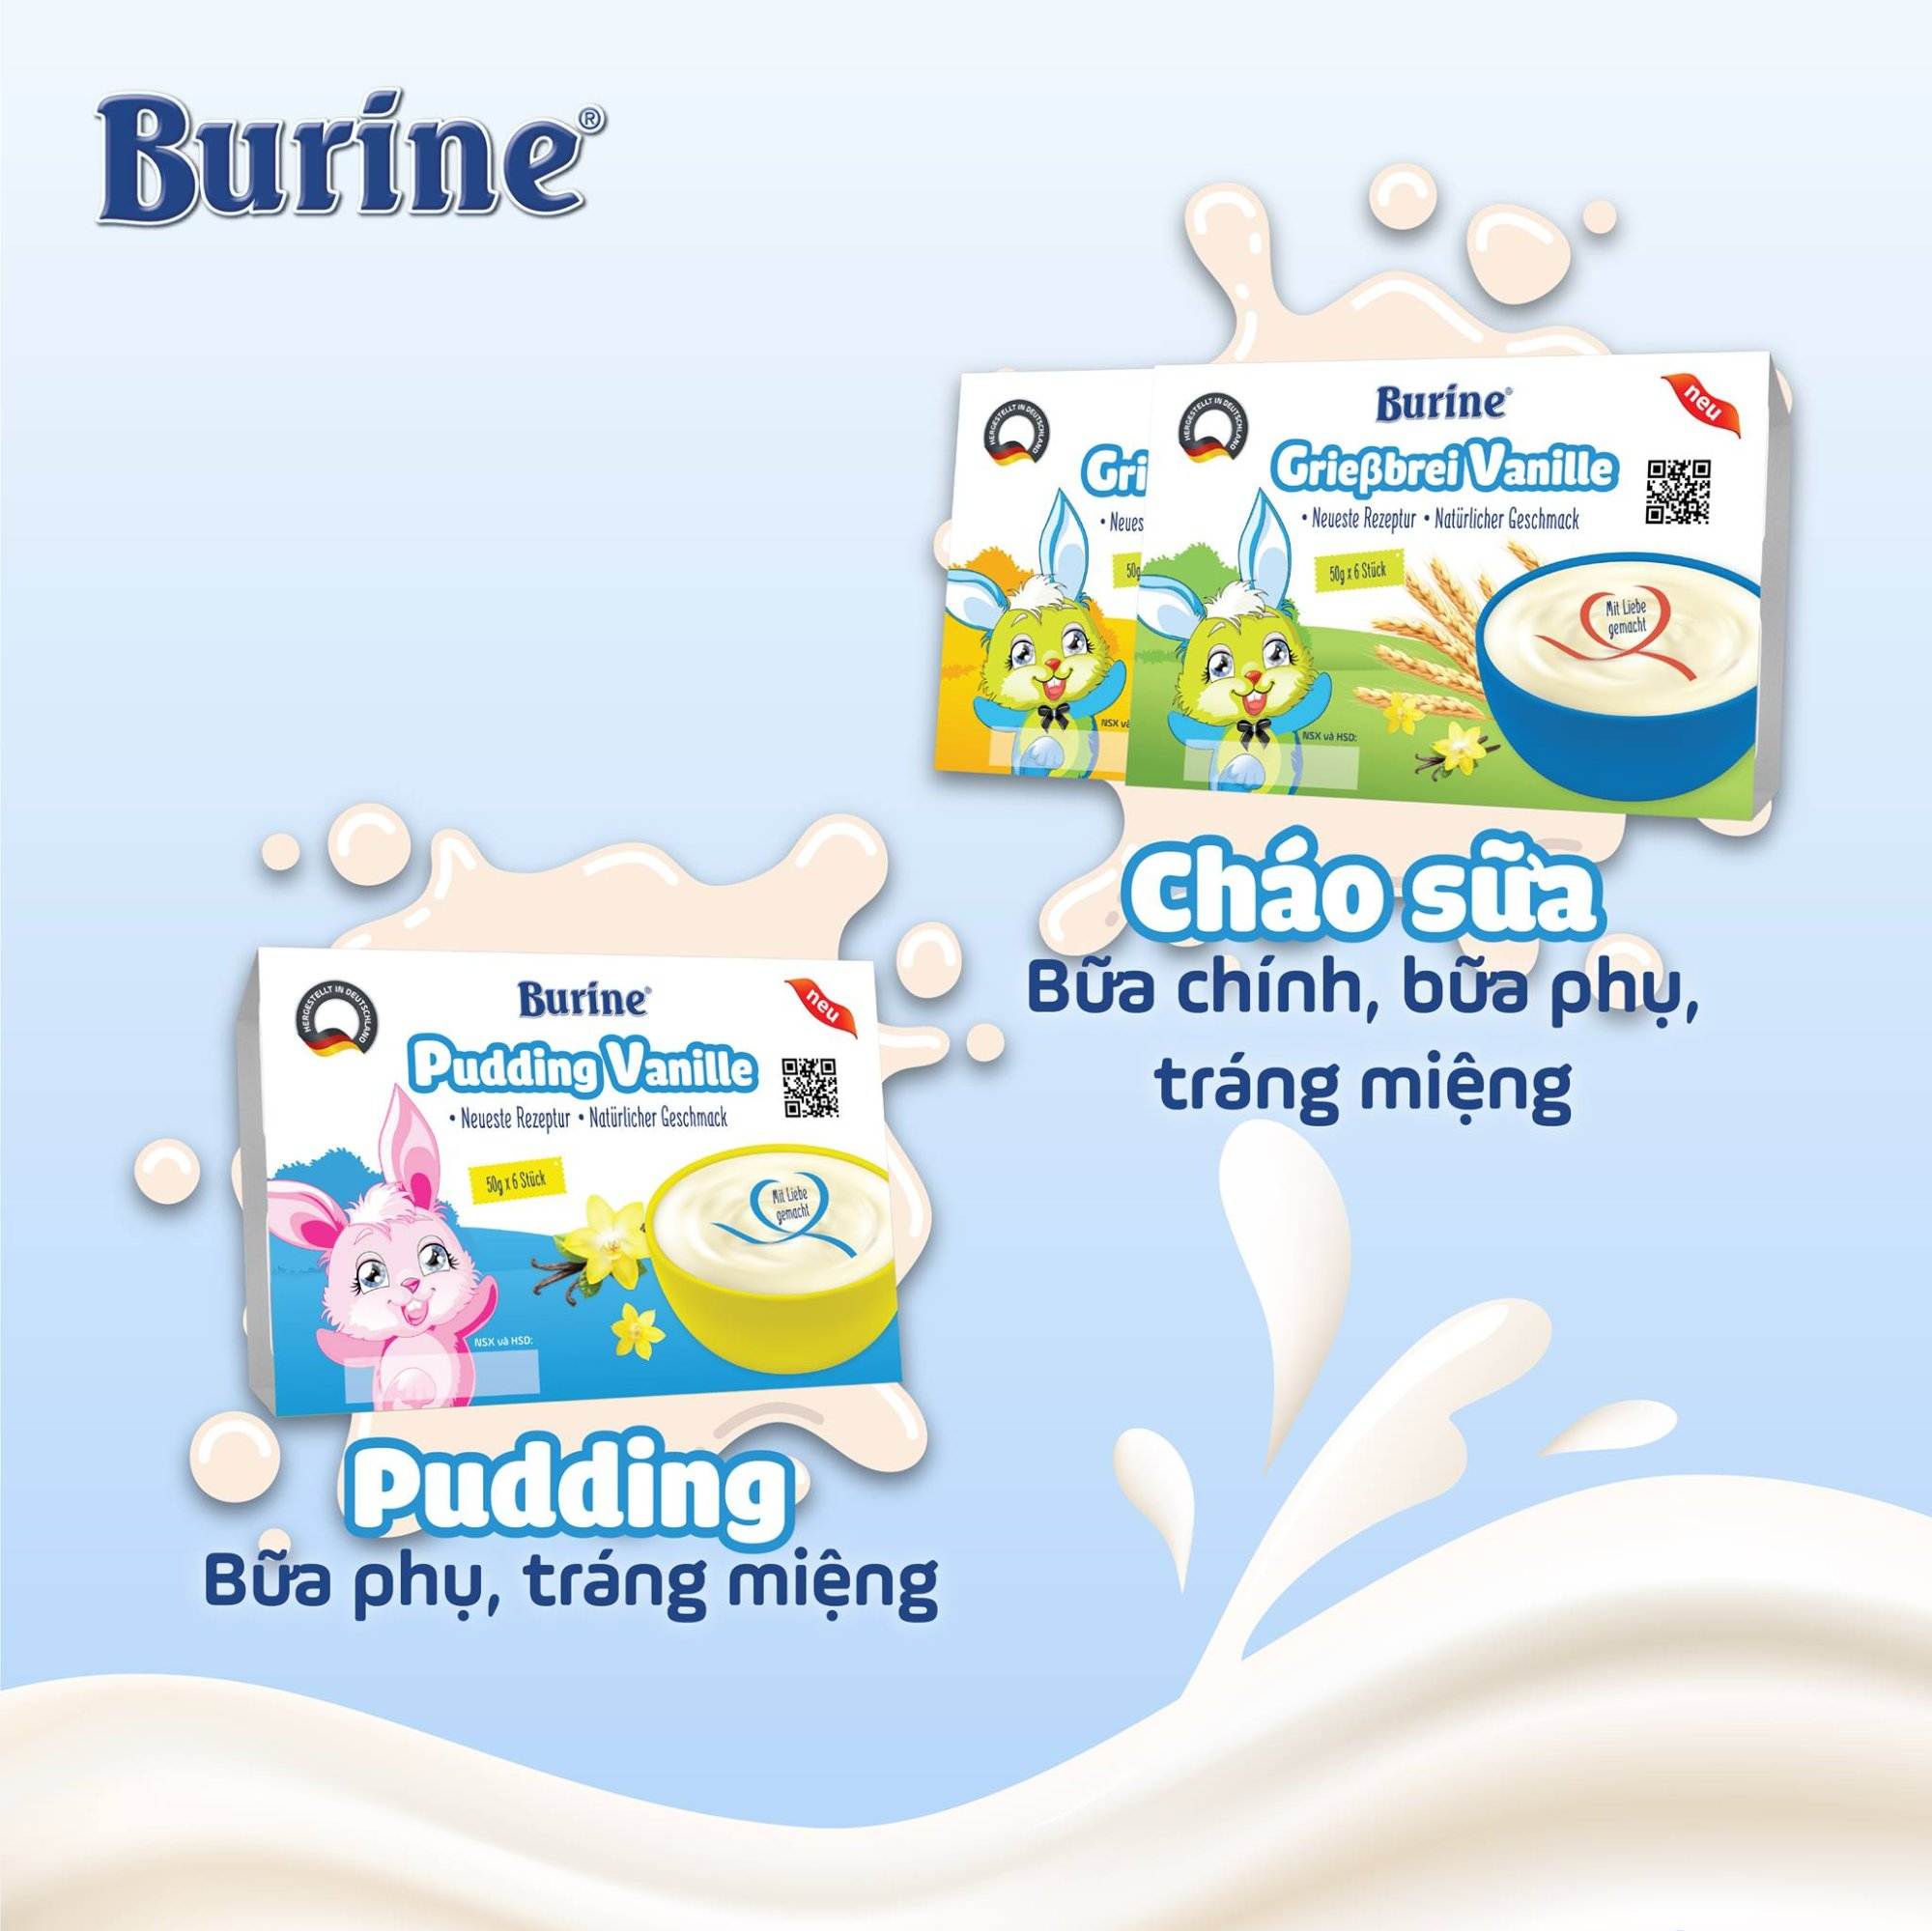 cháo sữa burine pudding burine ăn dặm cho bé